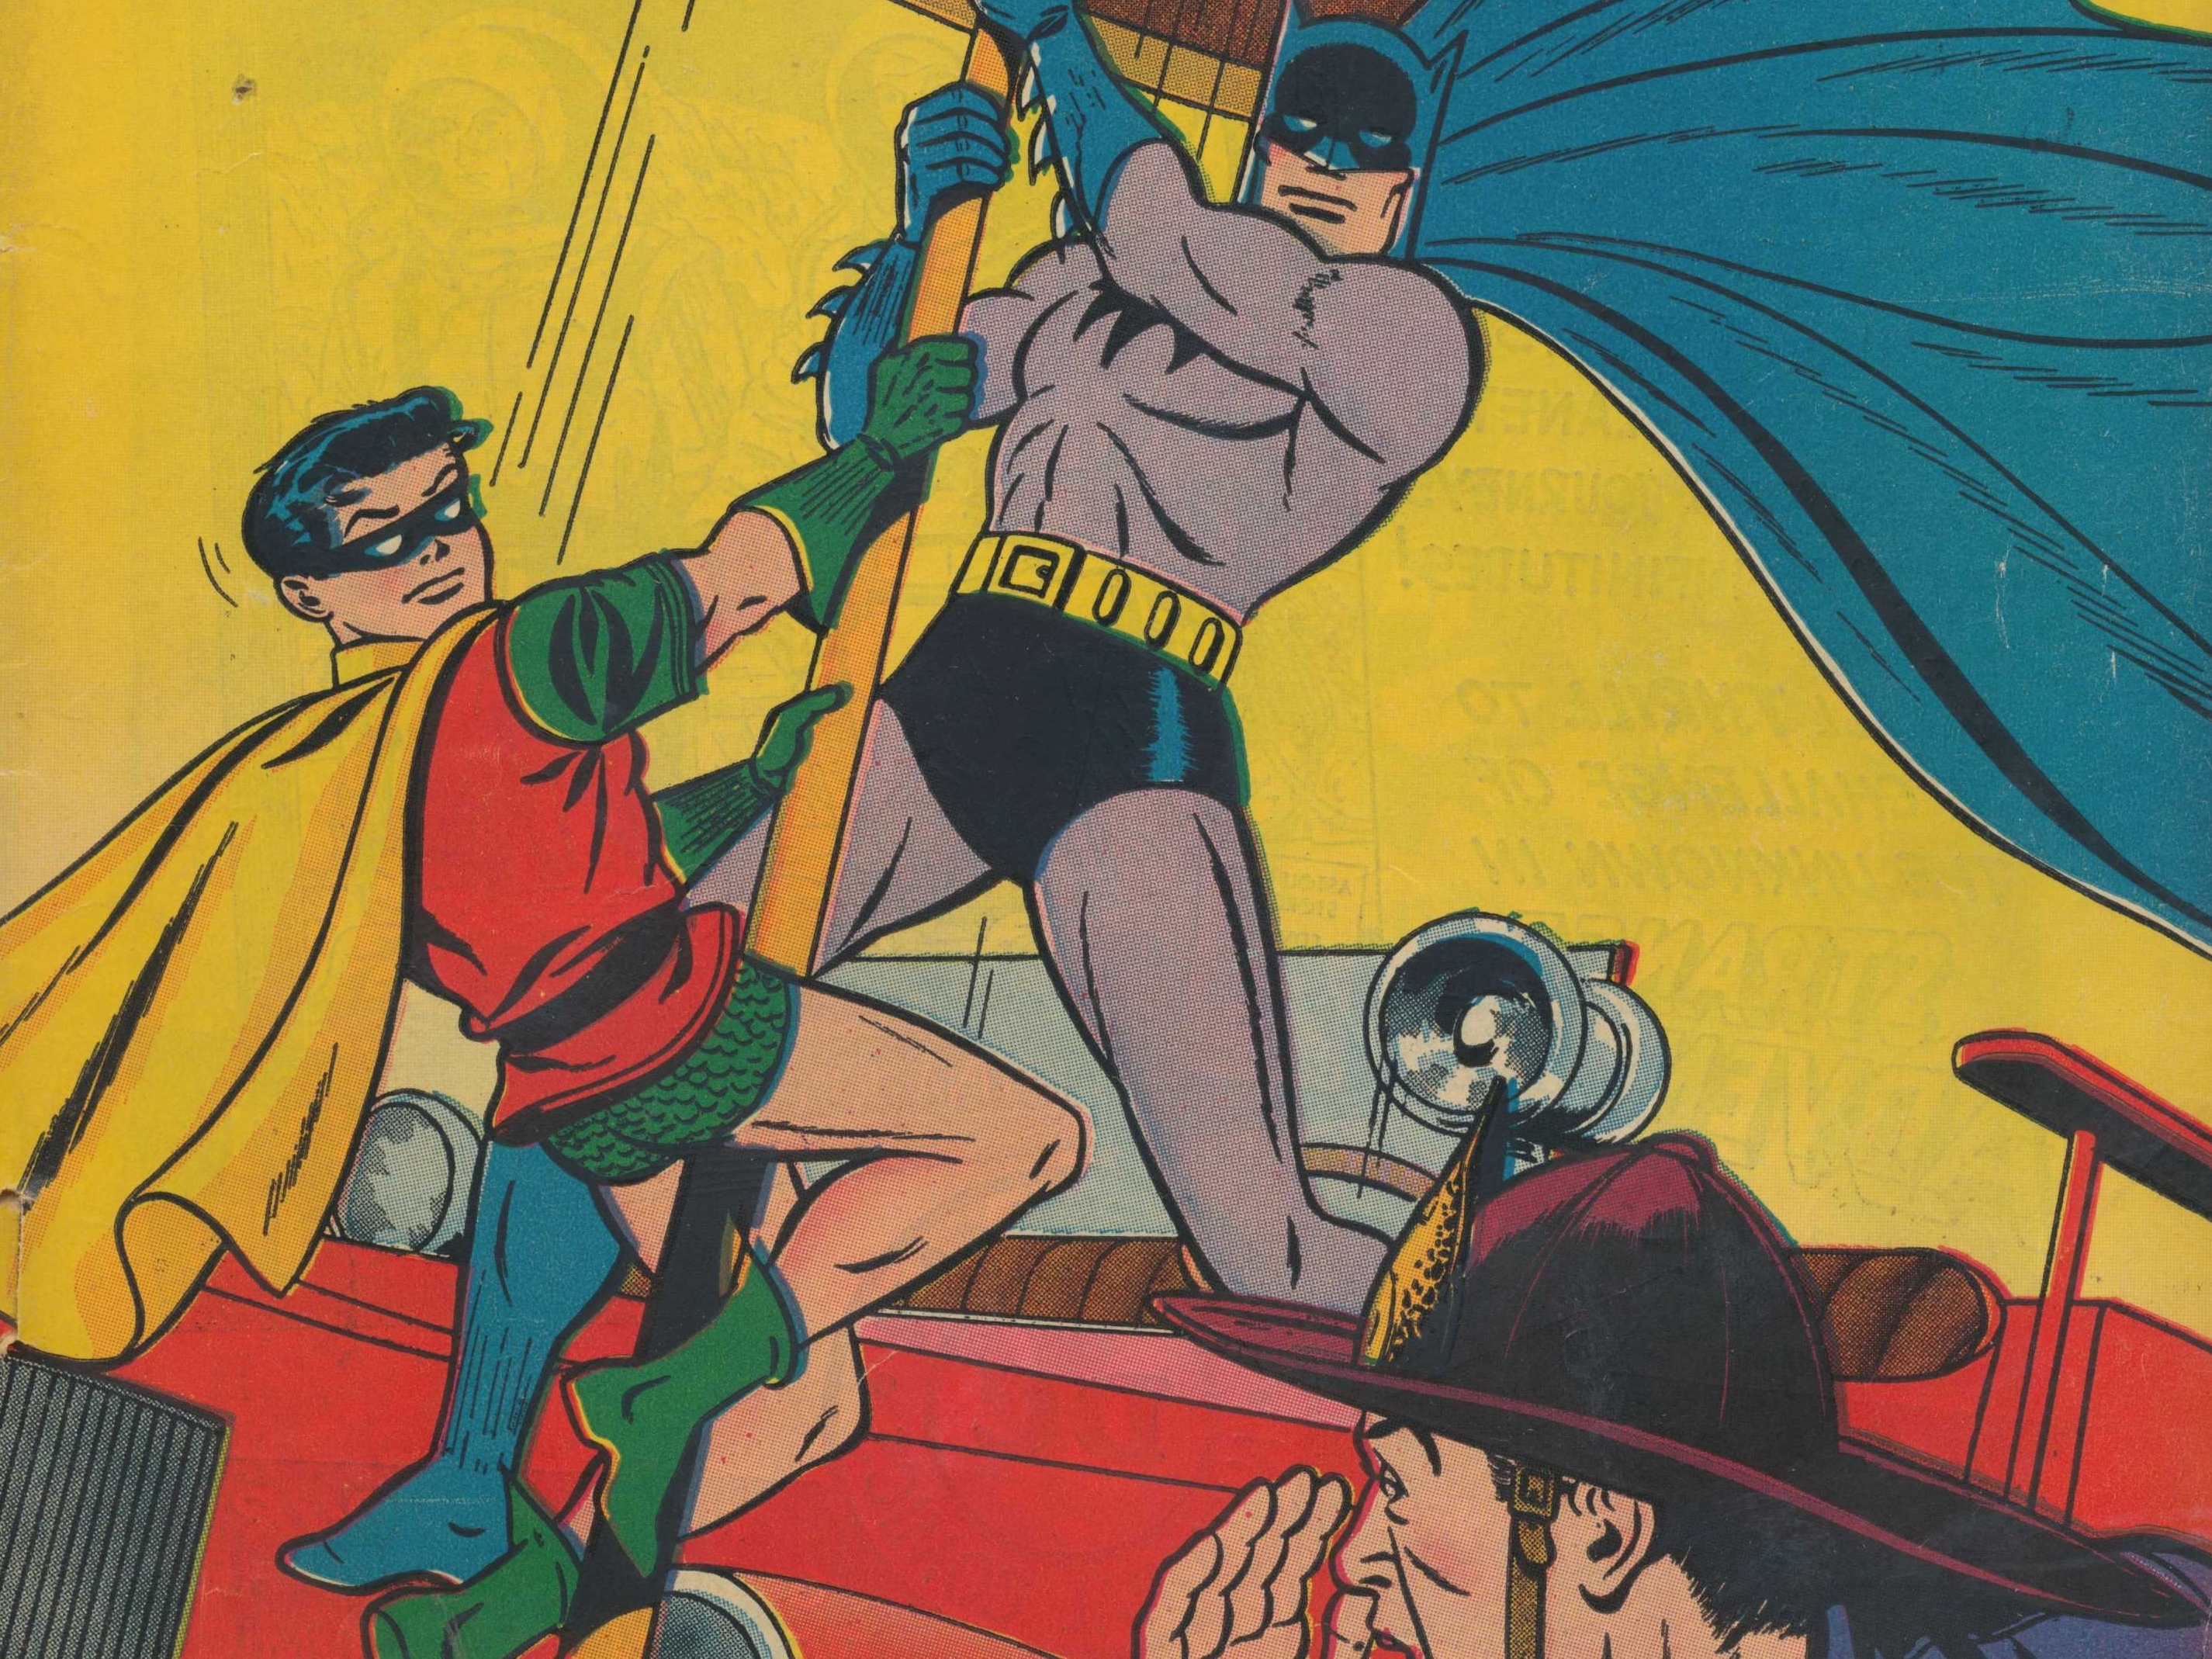 Скачать обои бесплатно Комиксы, Бэтмен, Комиксы Dc, Робин (Комиксы Dc), Дик Грейсон, Бэтмен И Робин картинка на рабочий стол ПК